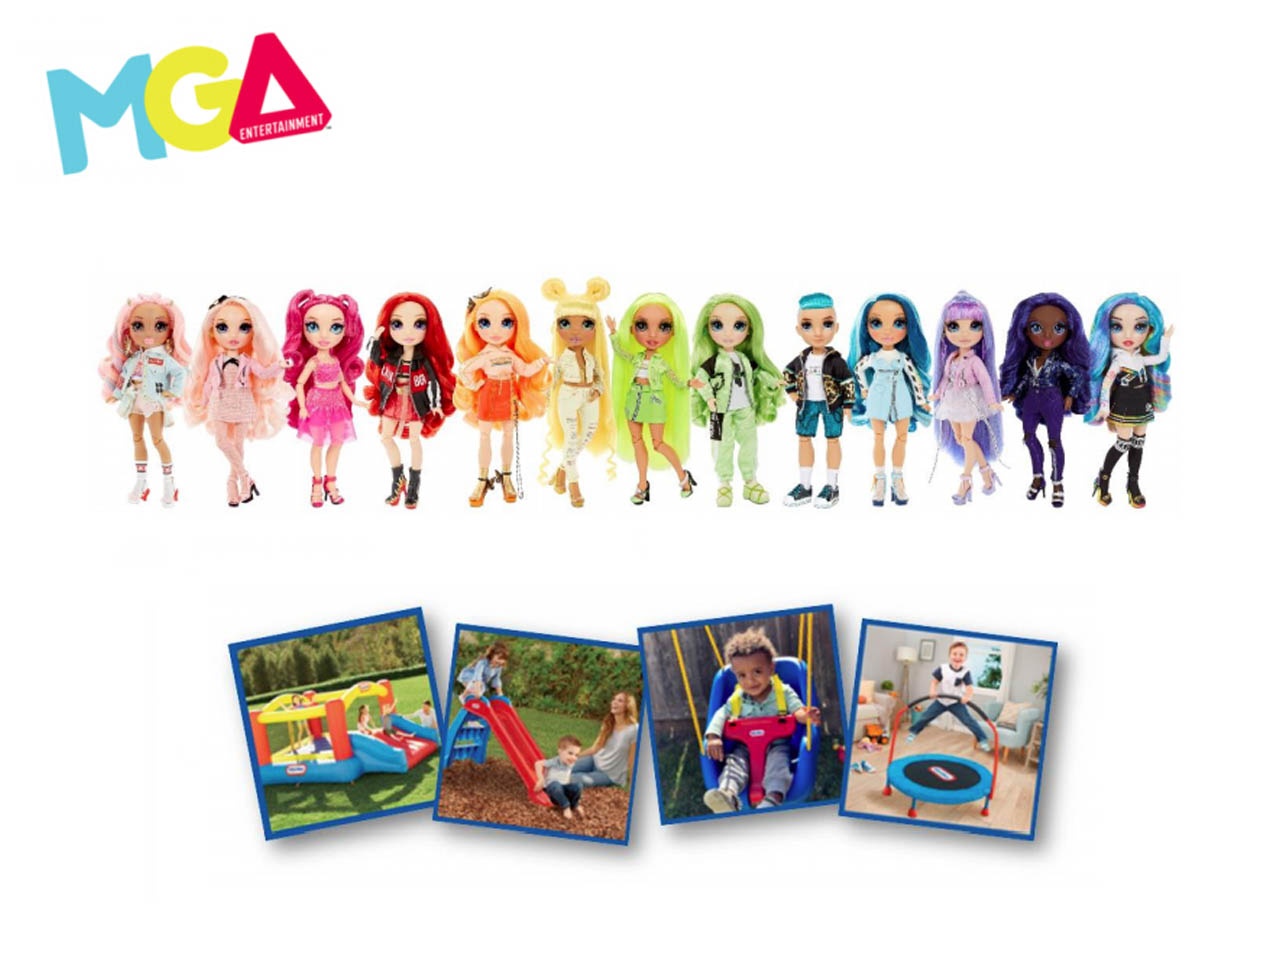 Le fabricant de jouets MGA Entertainment développe sa présence en France